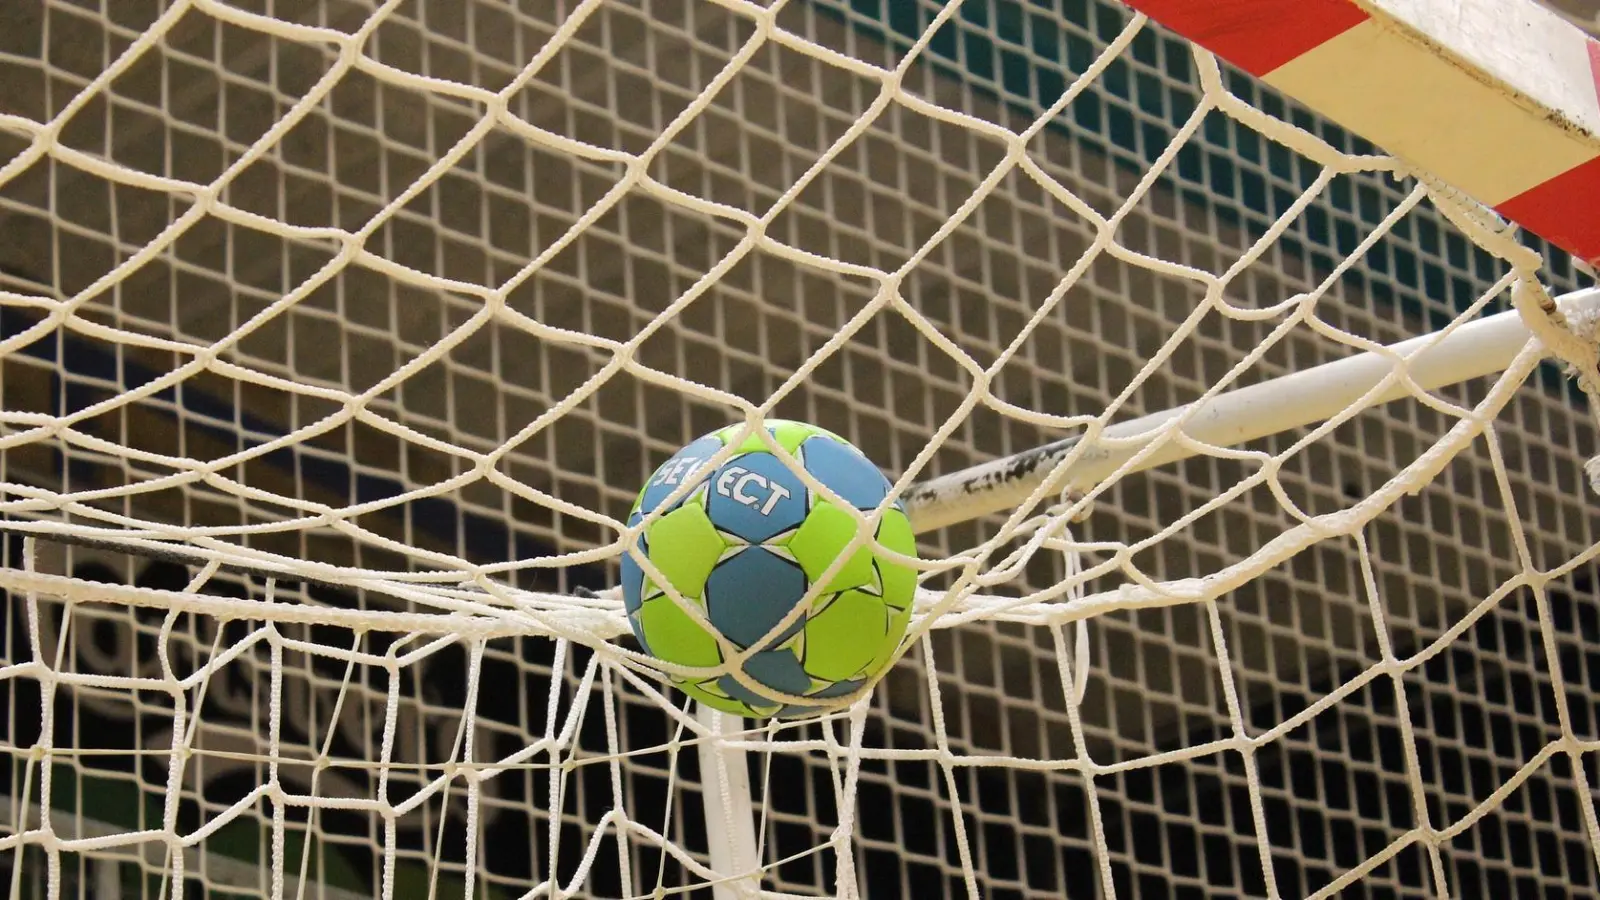 Bezirkspokal Leipzig im Handball wird erneut in Taucha ausgetragen (Foto: taucha-kompakt.de)